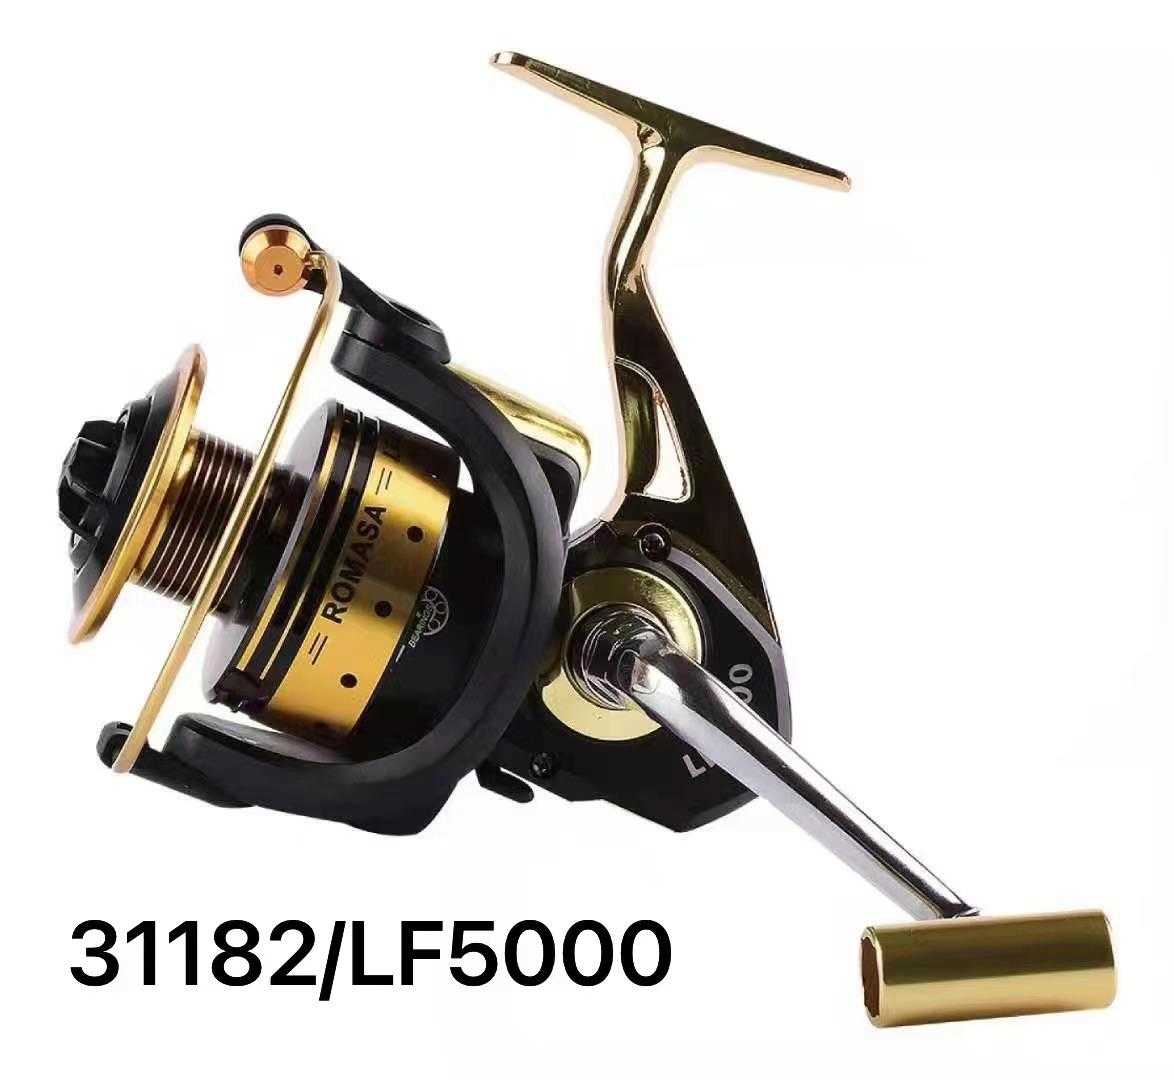 Μηχανάκι ψαρέματος - LF5000 - 31182